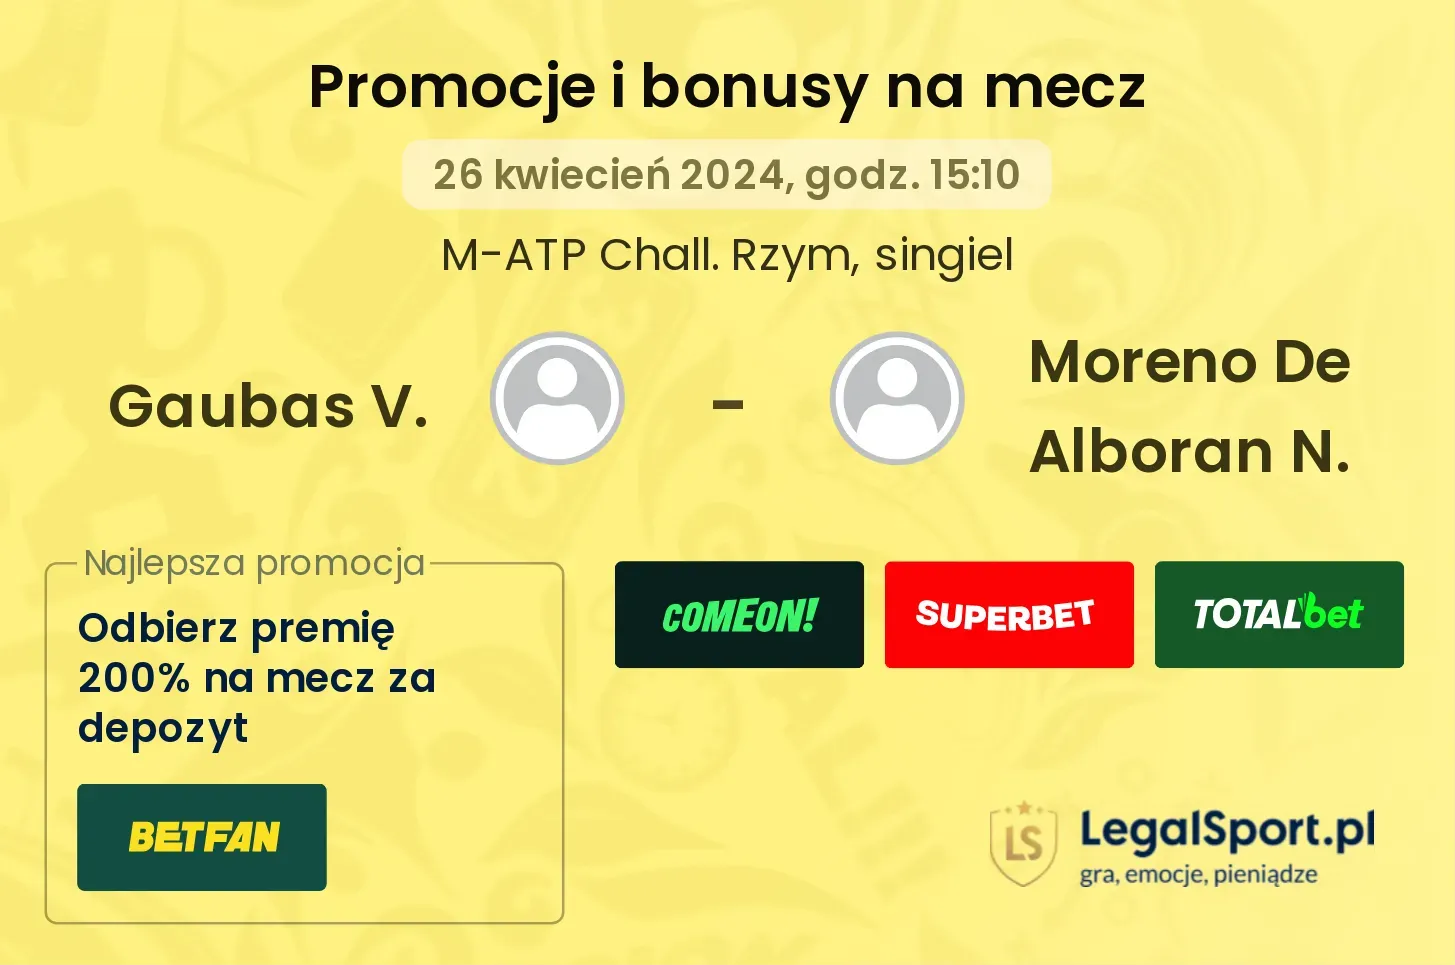 Gaubas V. - Moreno De Alboran N. promocje bonusy na mecz